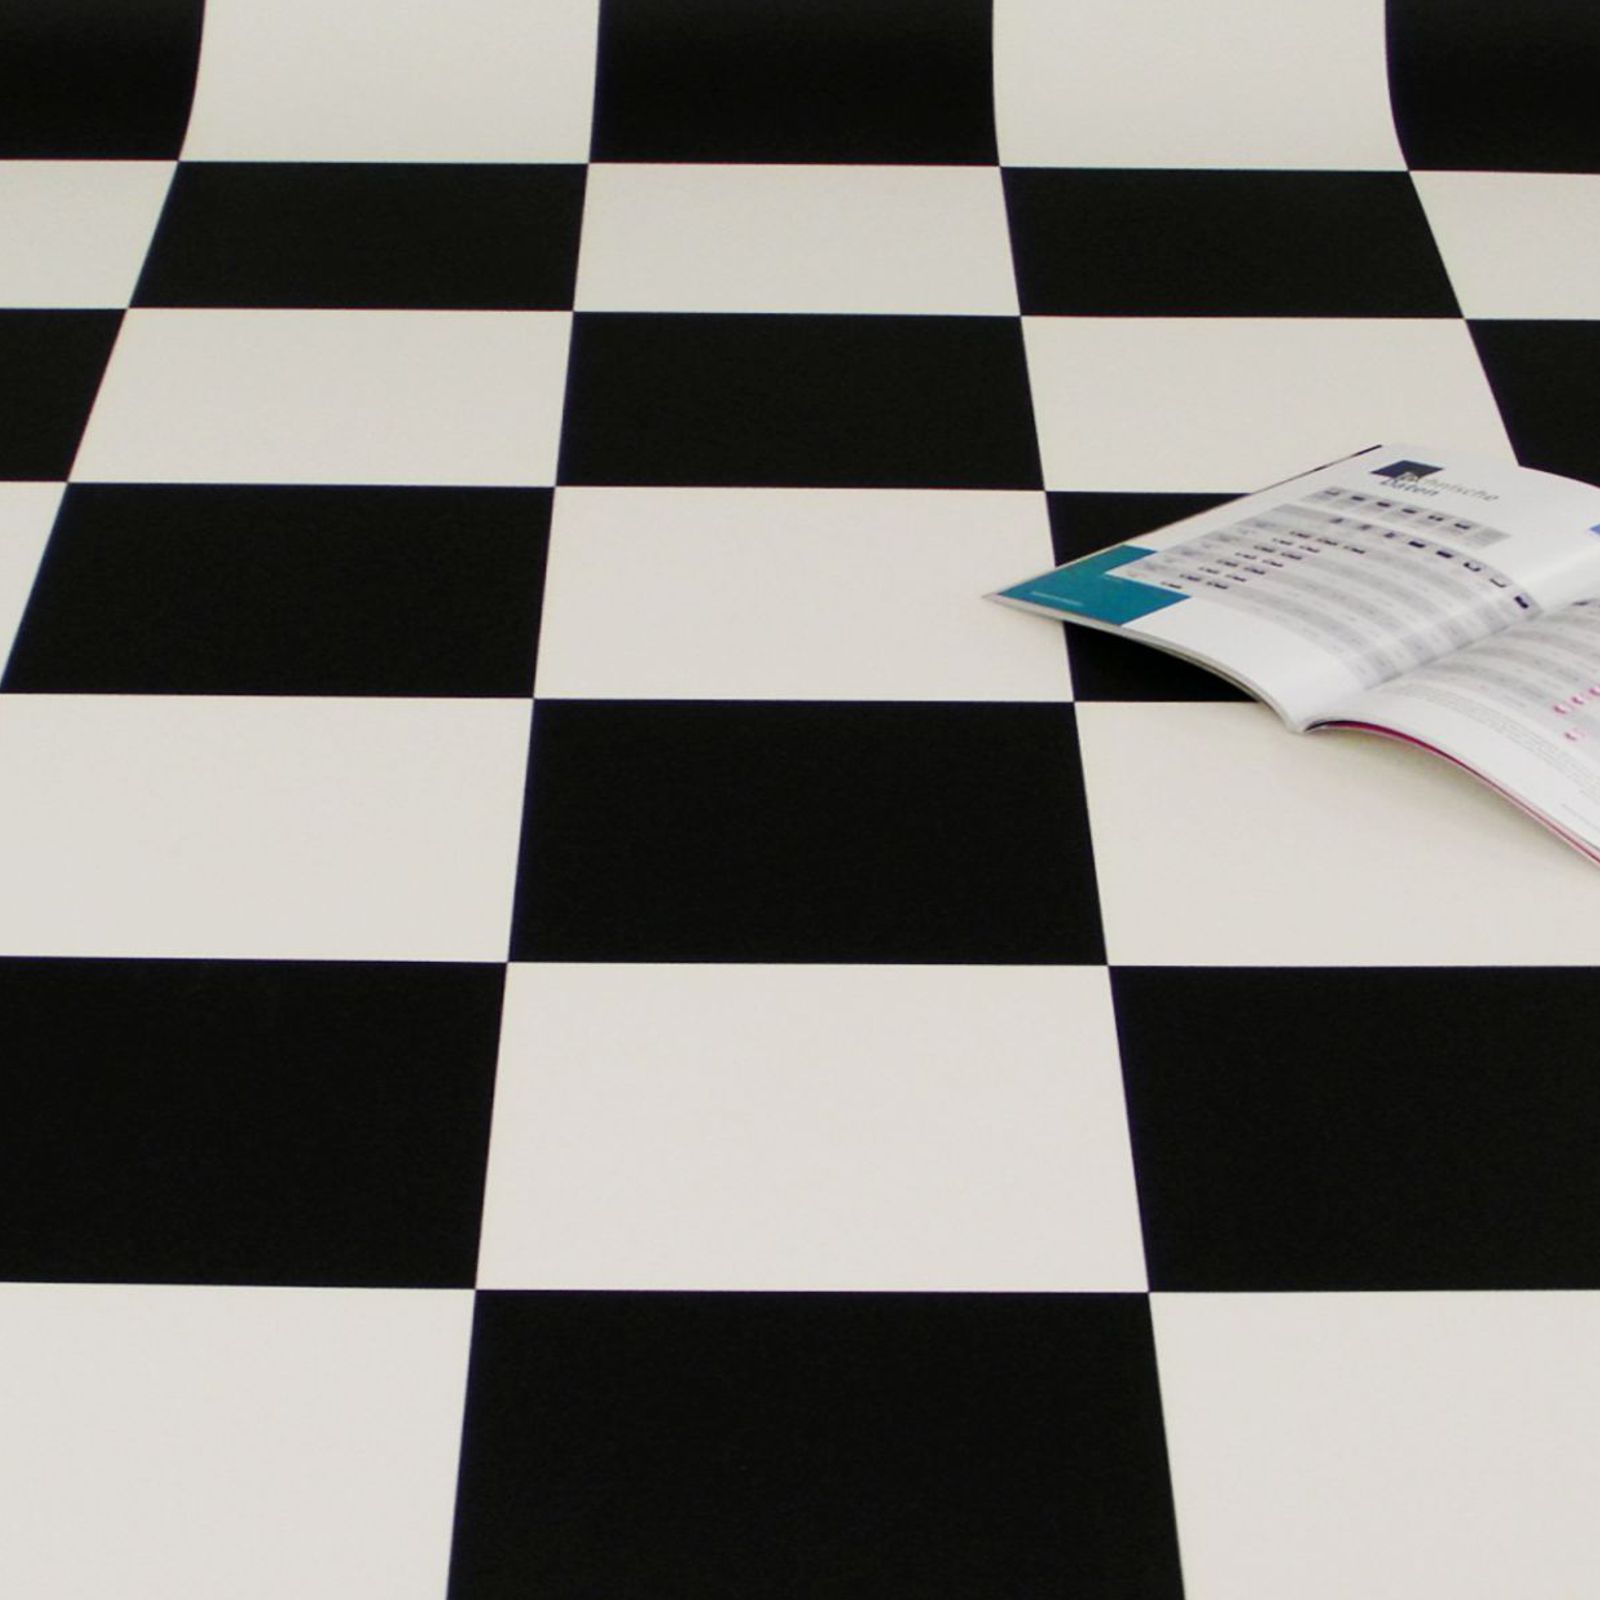 PVC Boden im Schachbrett-Muster mit schwarzen und weißen Fliesen im Format 25 x 25 cm